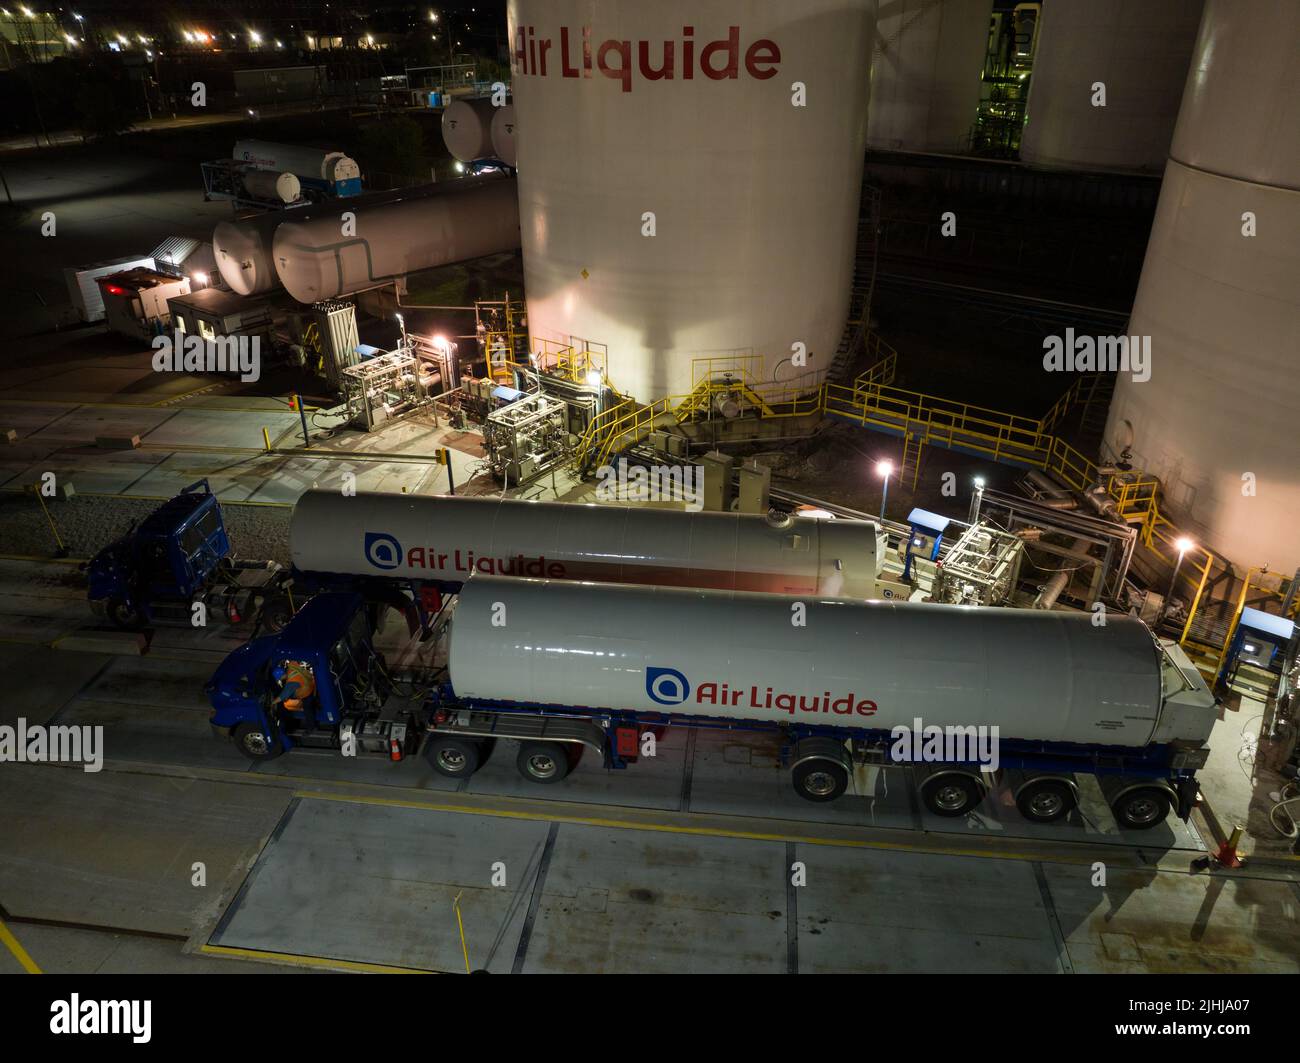 Vista aérea de los camiones de Air Liquide que se llenan en una instalación de Air Liquide, un proveedor de servicios y gases industriales, vista de noche. Foto de stock